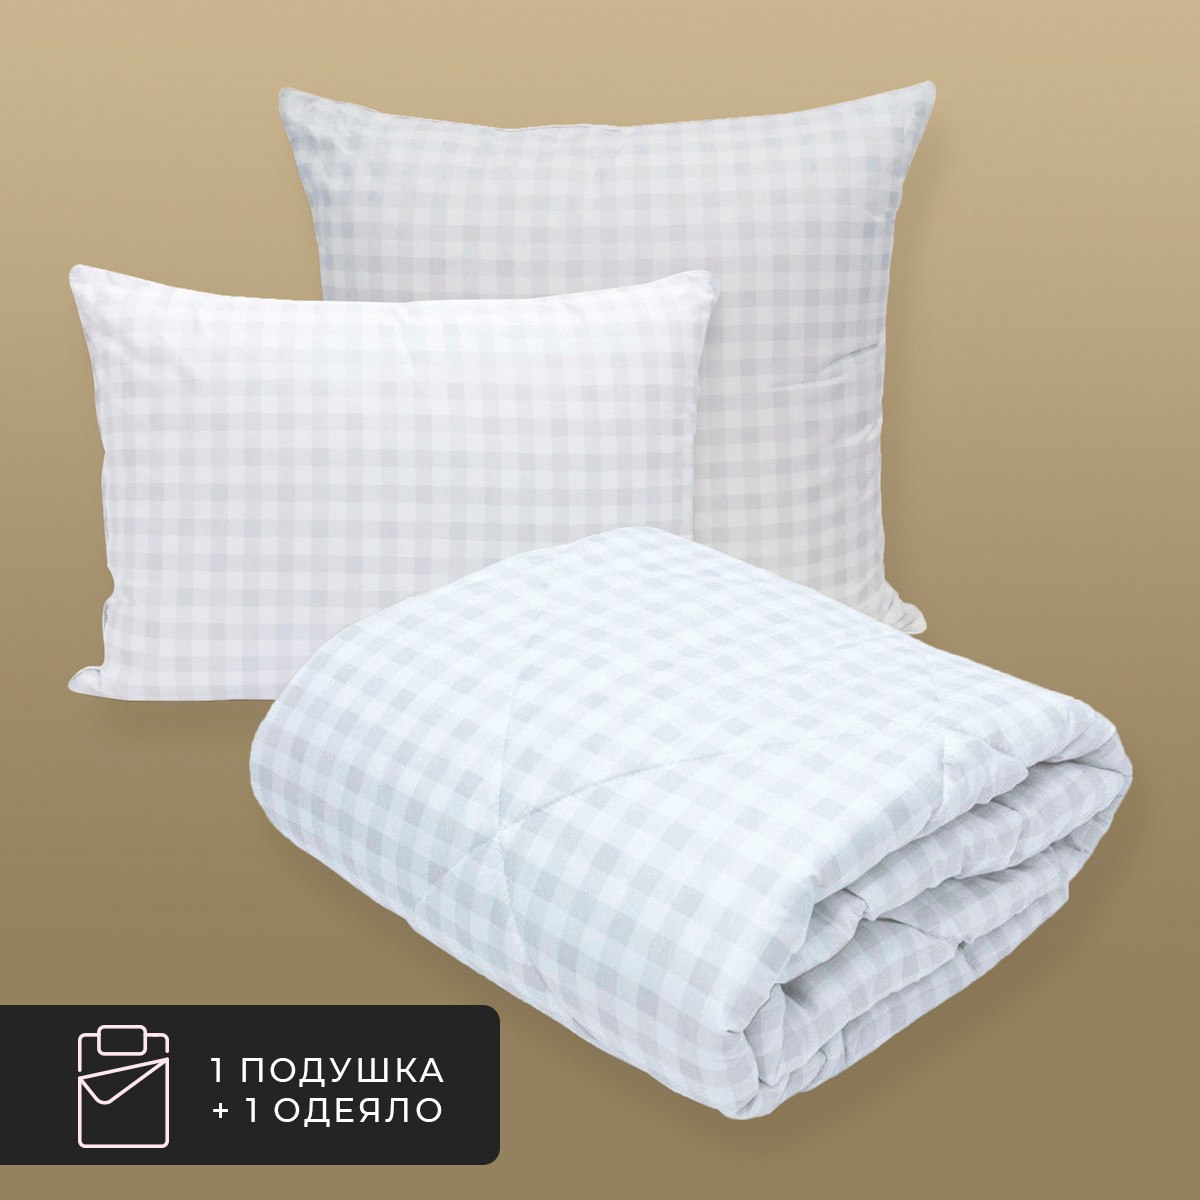 Набор 1 одеяло + 1 подушка Скандинавия, лебяжий пух в микрофибре (175х200, 70х70)